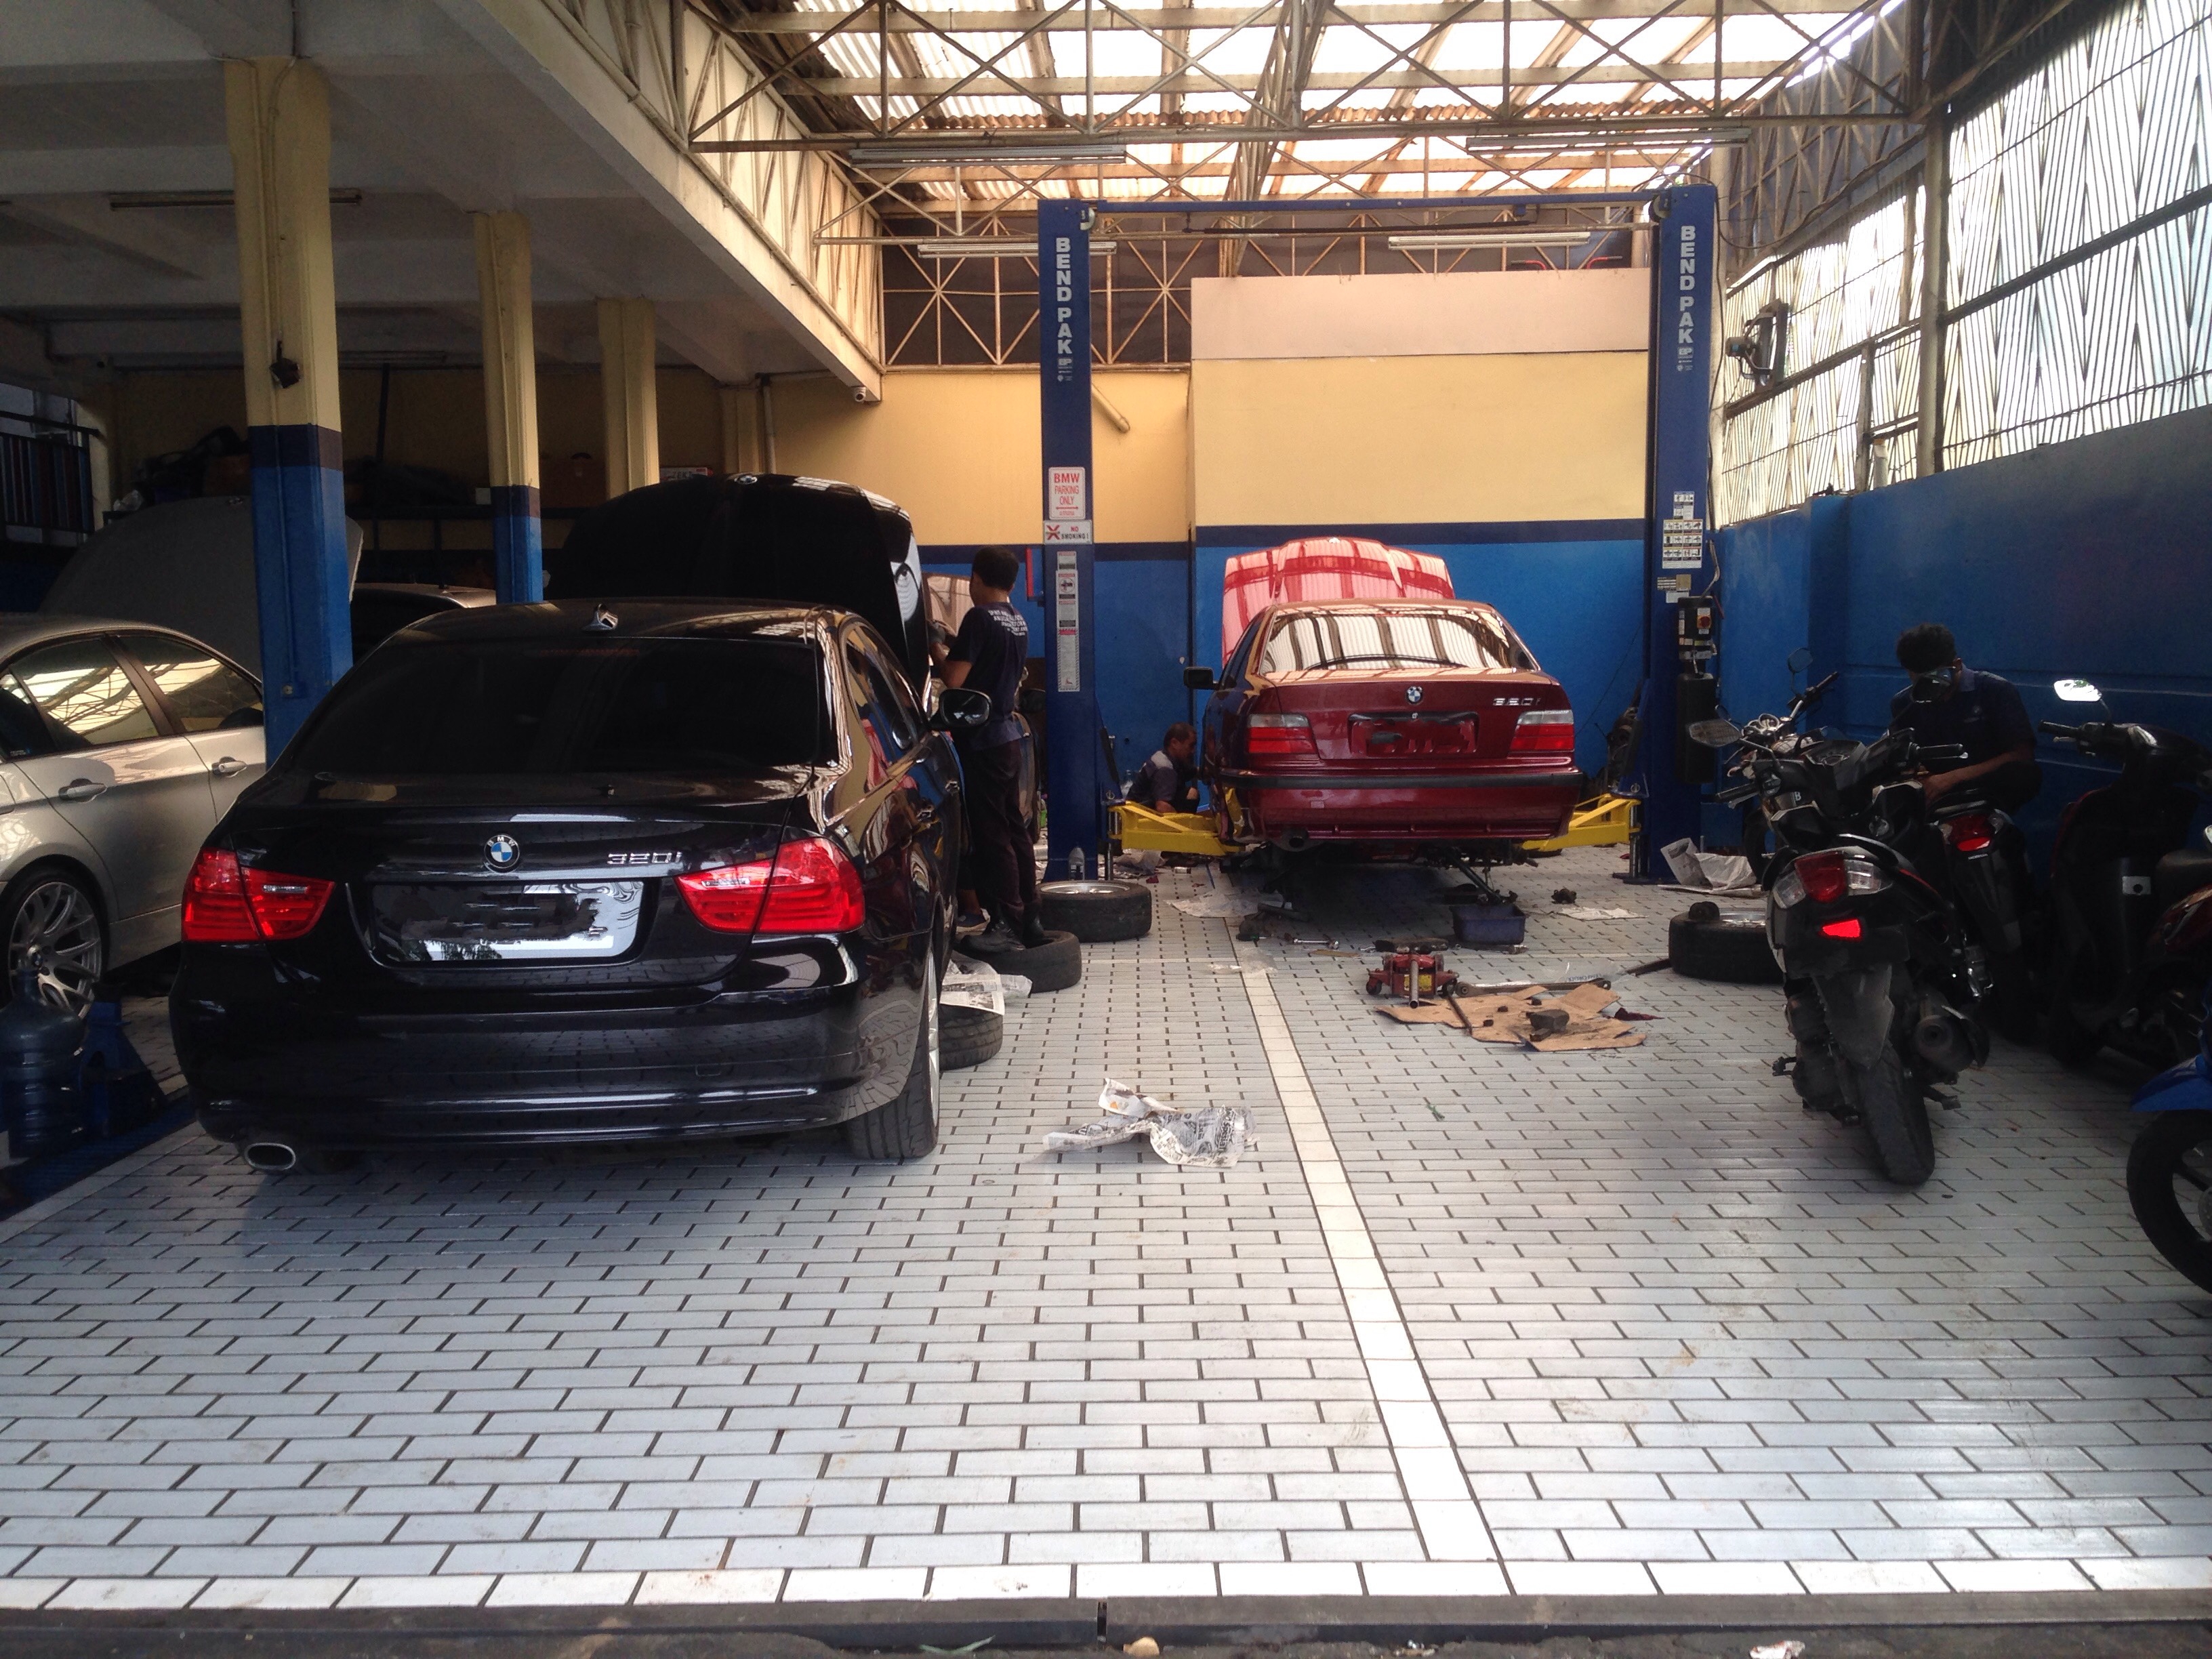 Koleksi Bengkel Modifikasi Mobil Bmw Di Jakarta Terbaru Modifotto